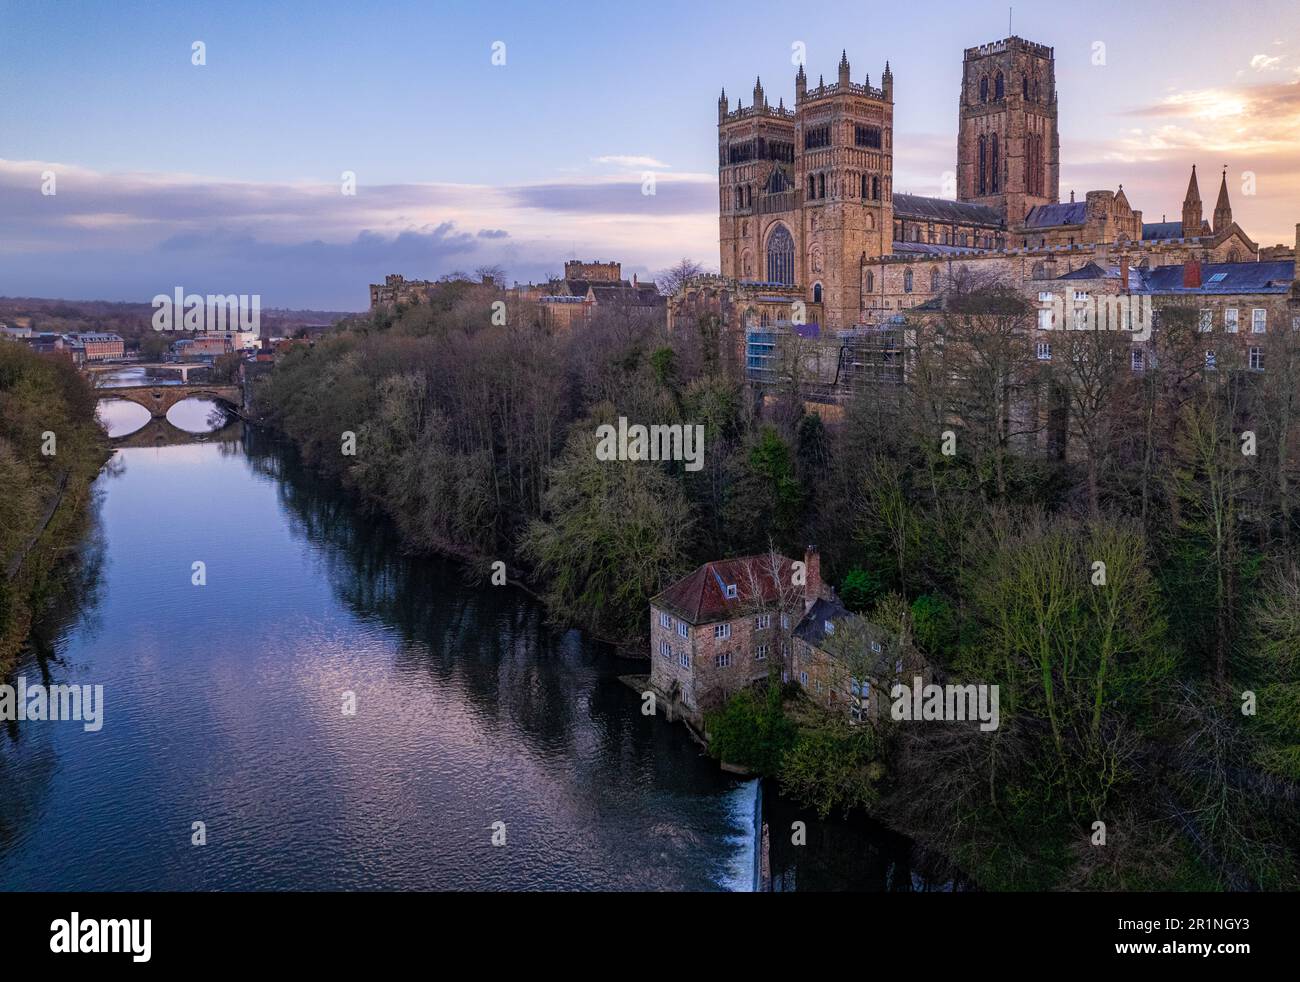 Immagine aerea di medio livello della Cattedrale di Durham in una mattinata invernale Foto Stock